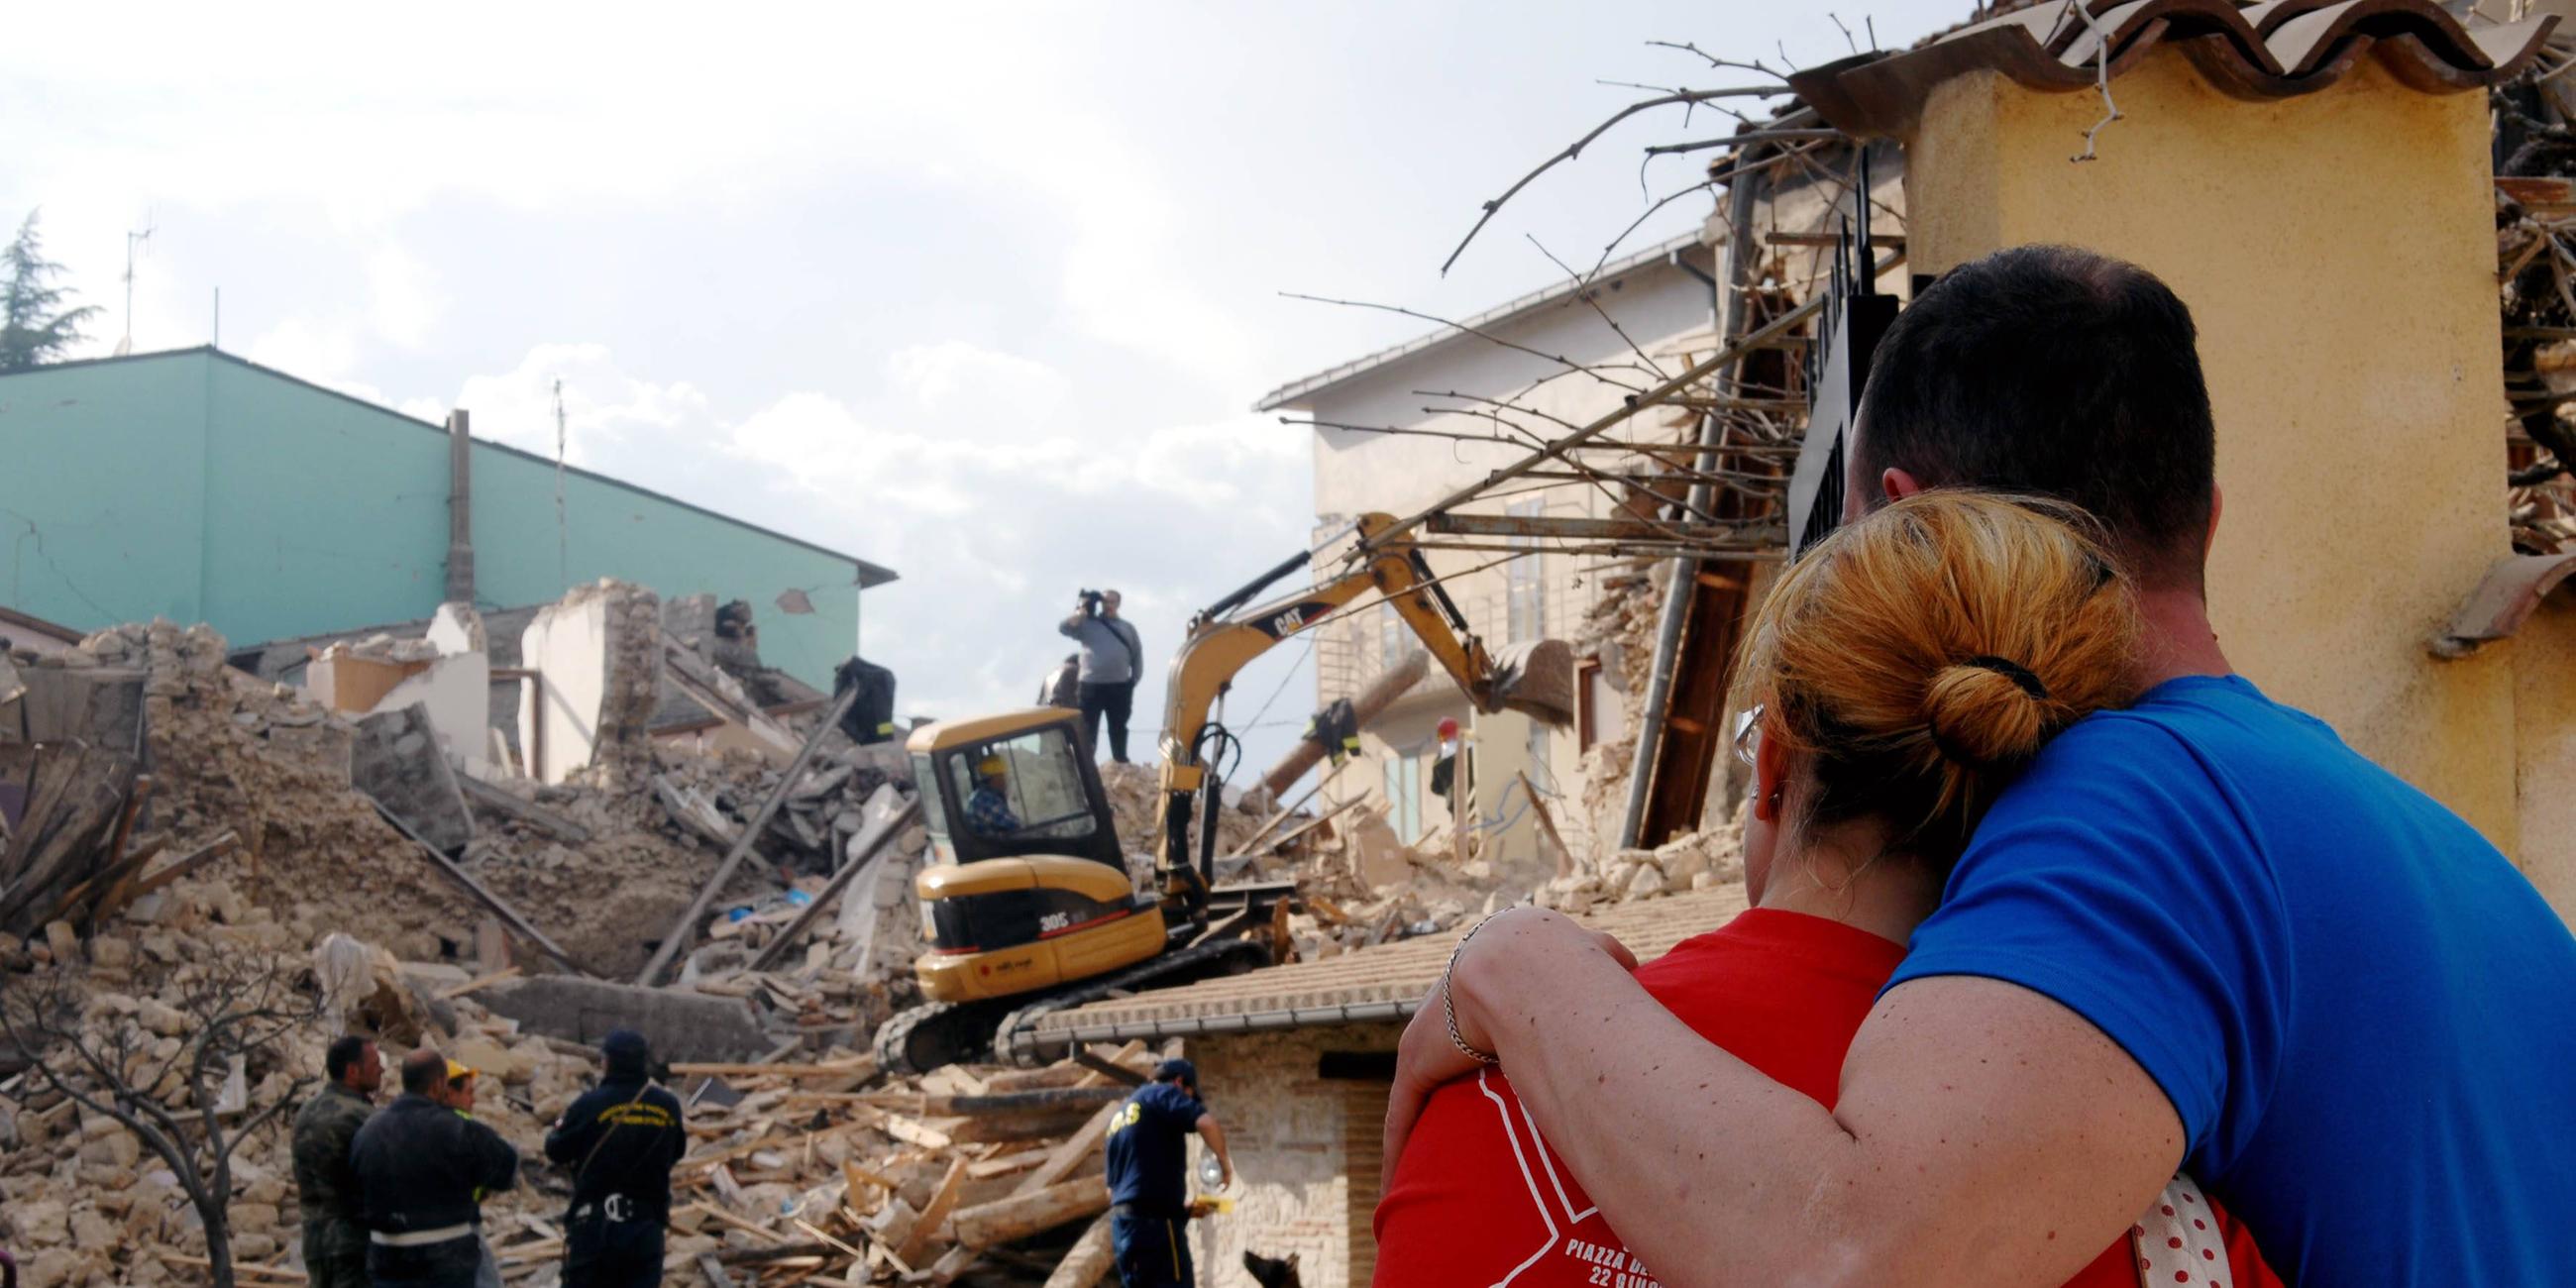 Erdbebenopfer beobachten die Suche der Rettungskräfte in den Trümmern ihres eingestürzten Hauses.